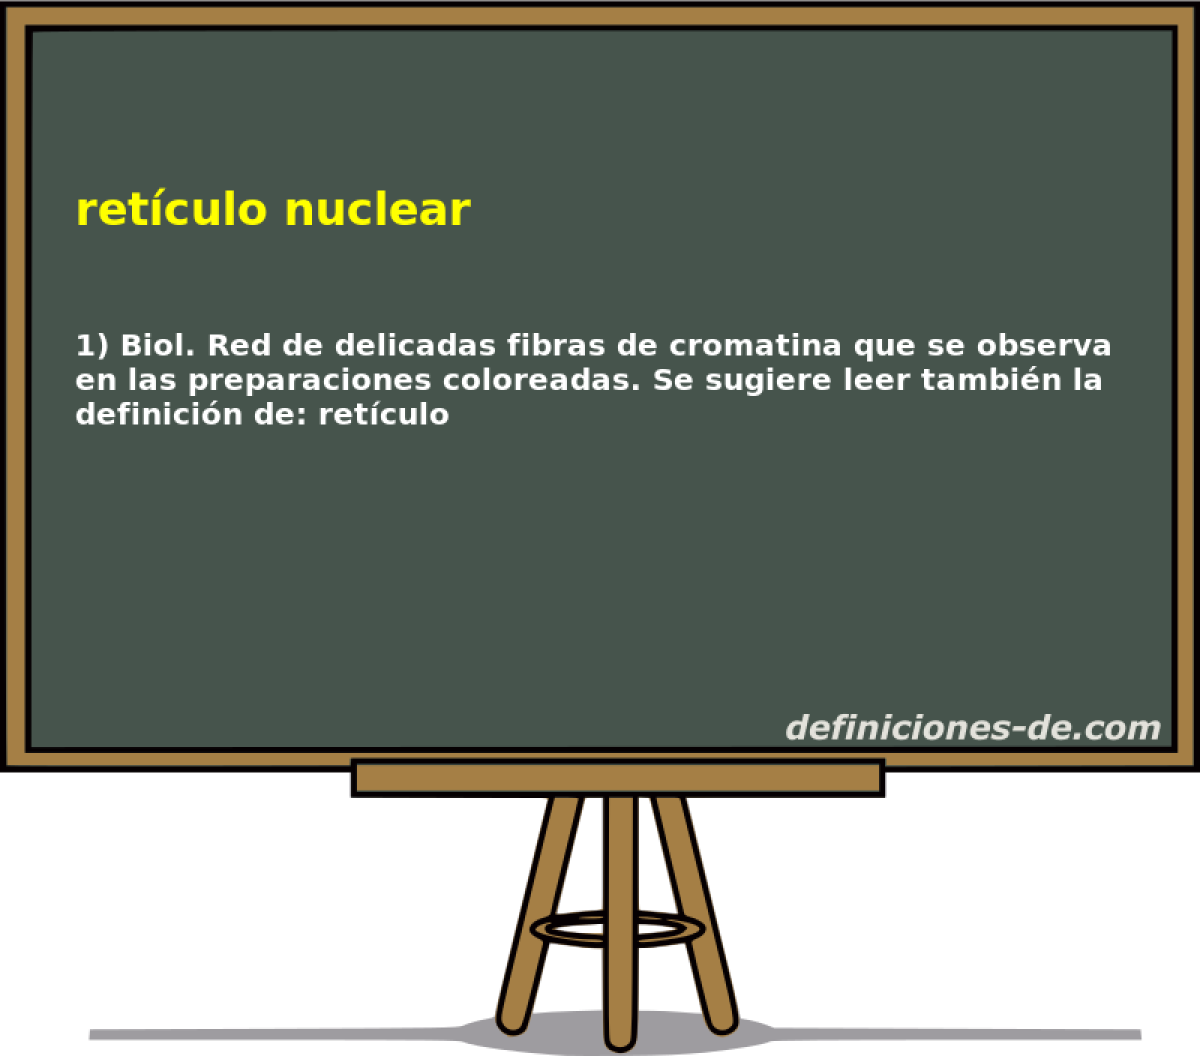 retculo nuclear 